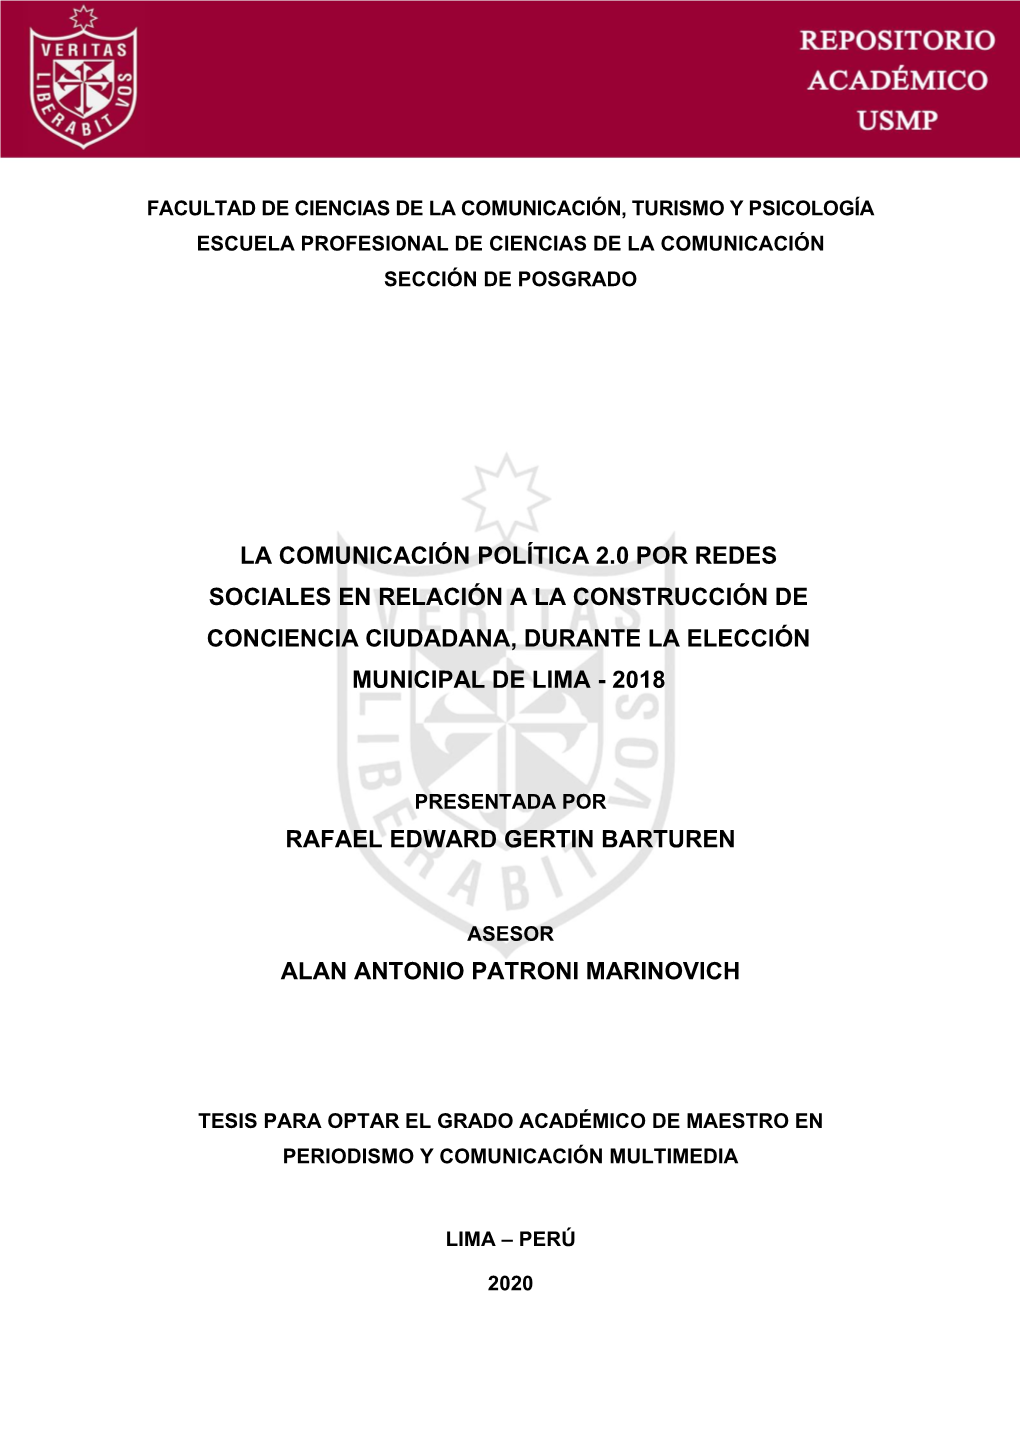 La Comunicación Política 2.0 Por Redes Sociales En Relación a La Construcción De Conciencia Ciudadana, Durante La Elección Municipal De Lima - 2018